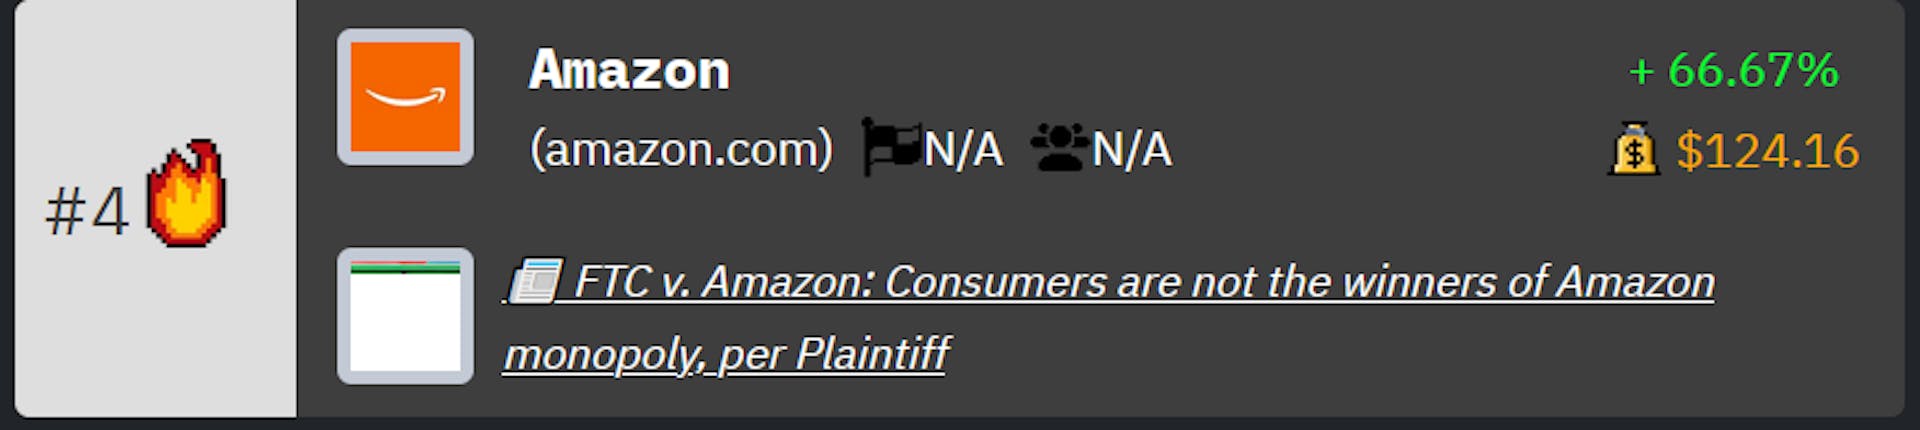 Classificação da Amazon nas classificações de empresas de tecnologia da HackerNoon